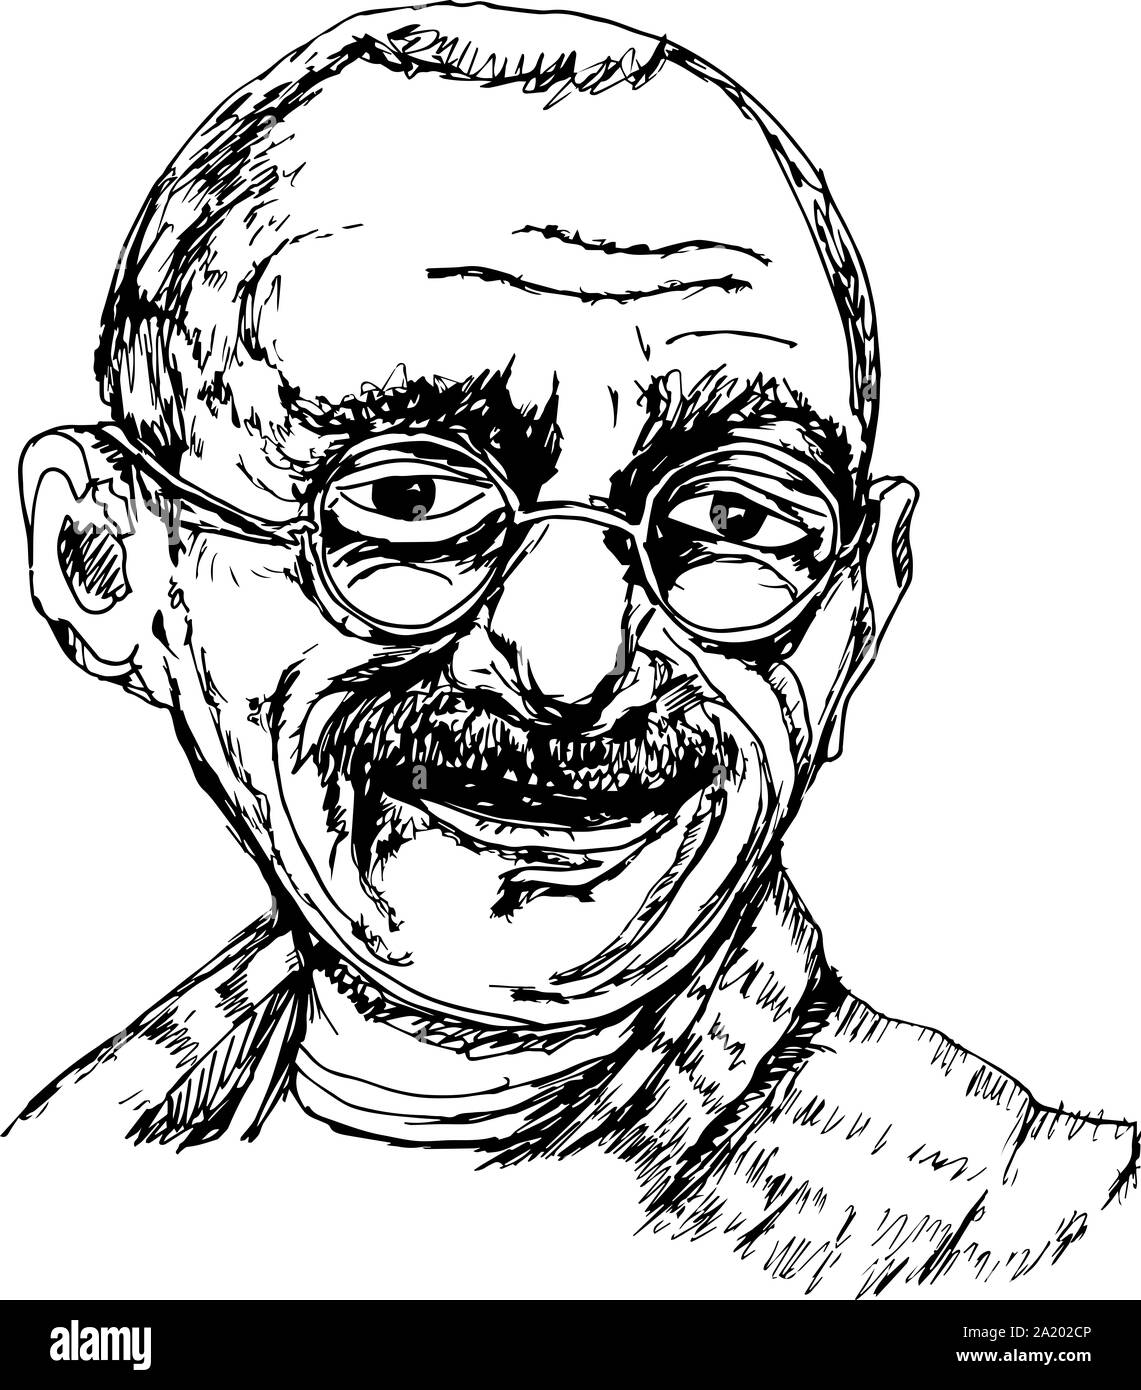 Caricatures of Gandhi